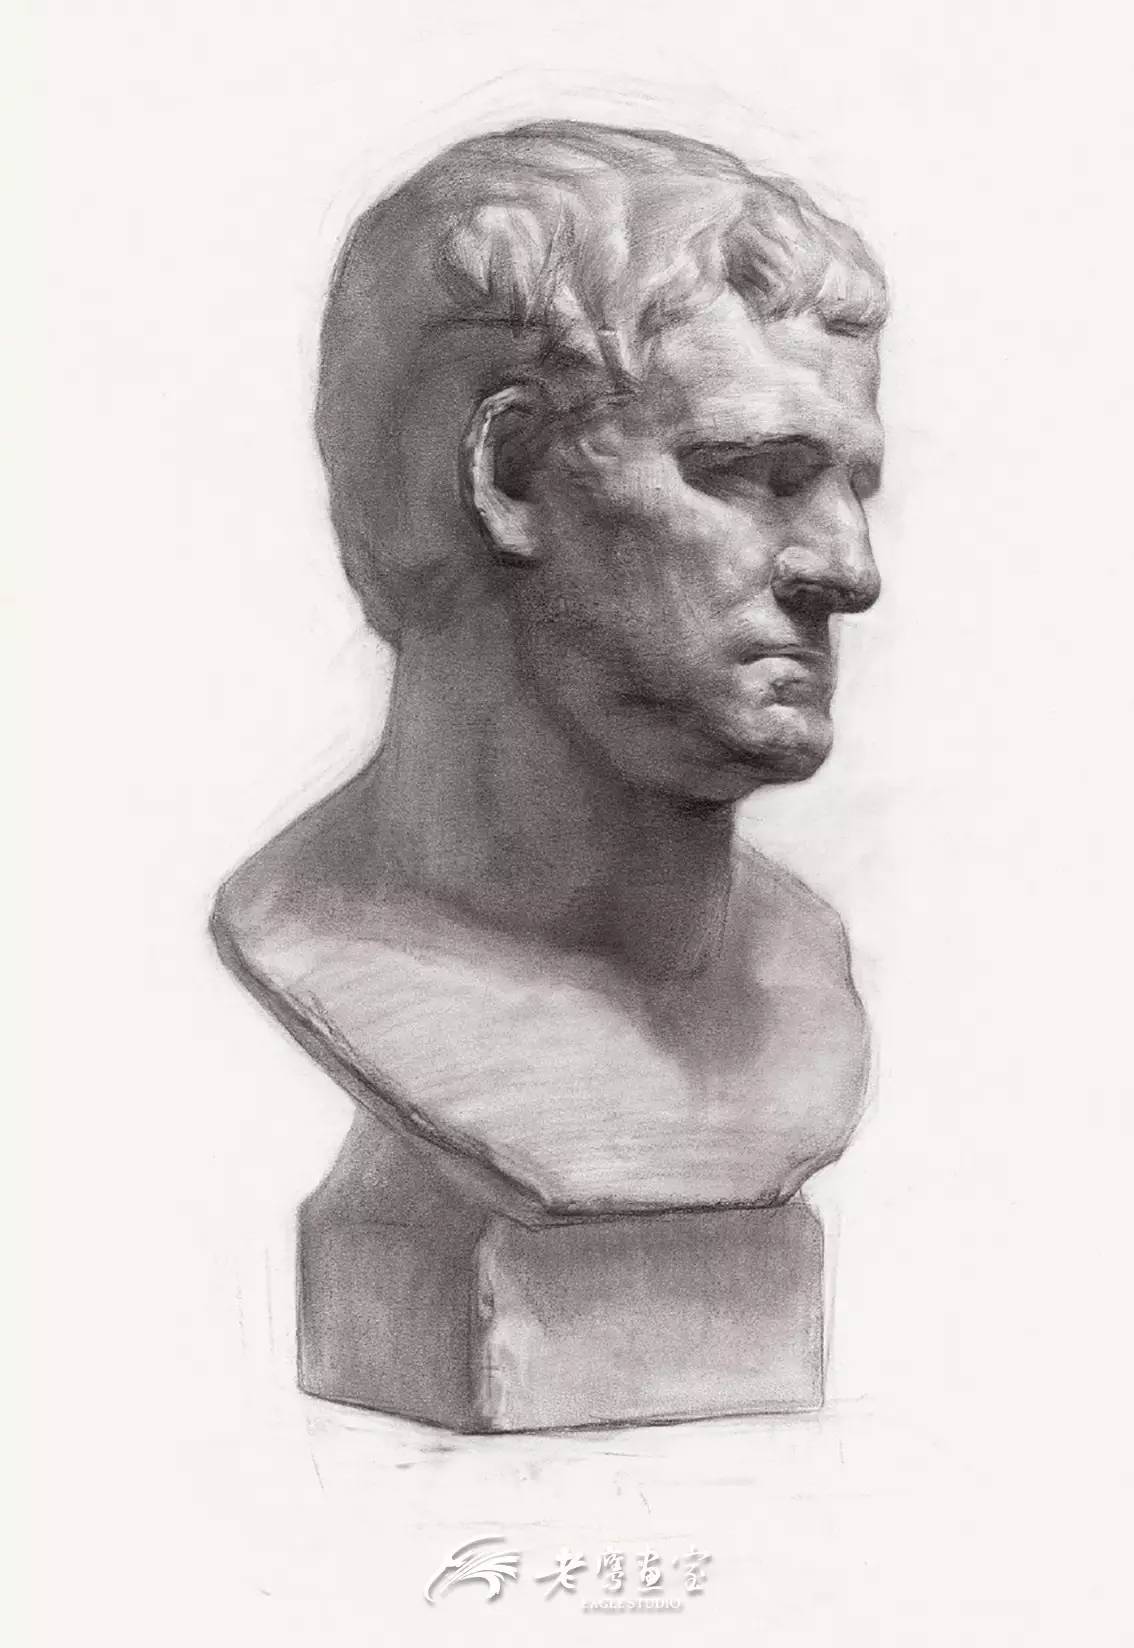 阿格里巴是罗马帝国创始人